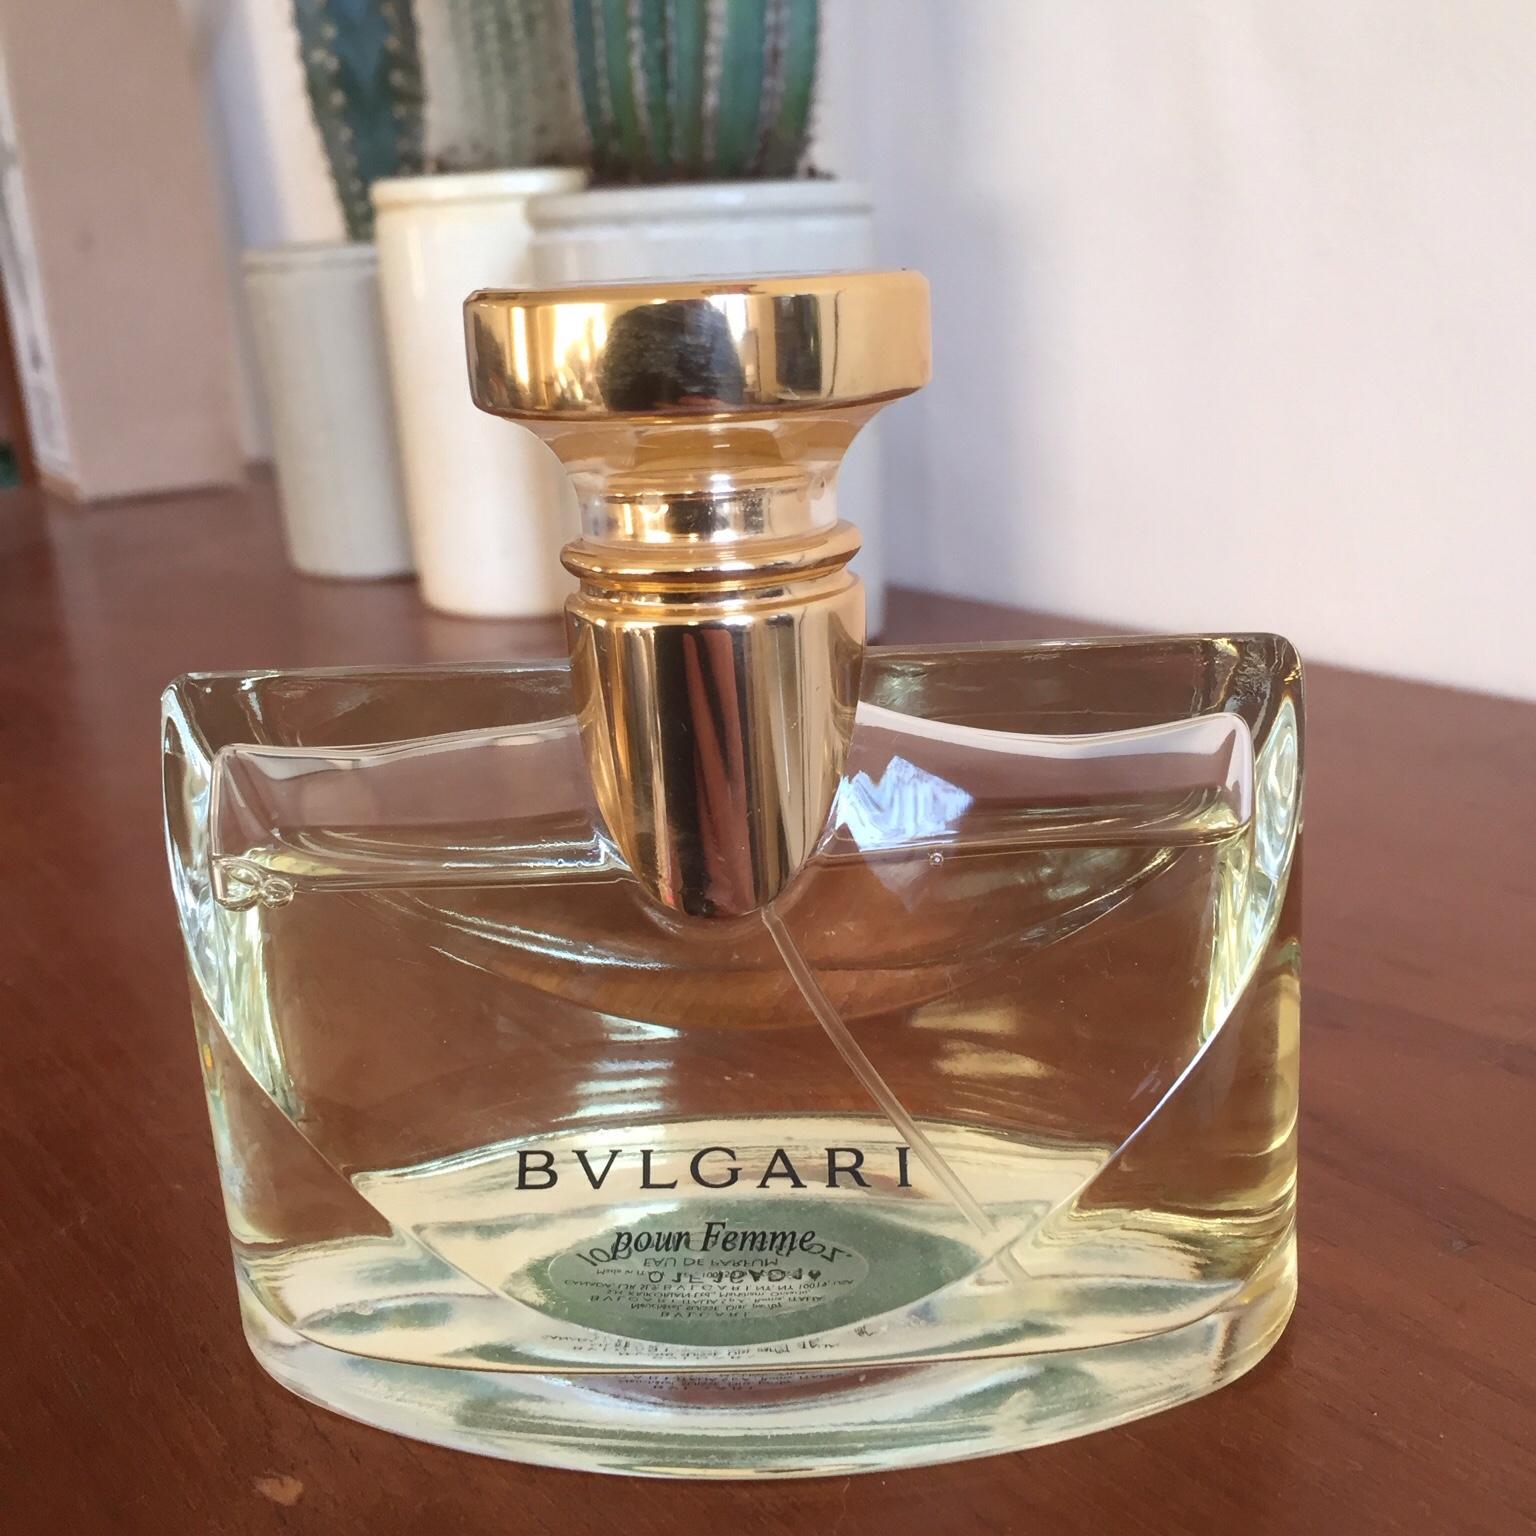 bvlgari pour femme parfum